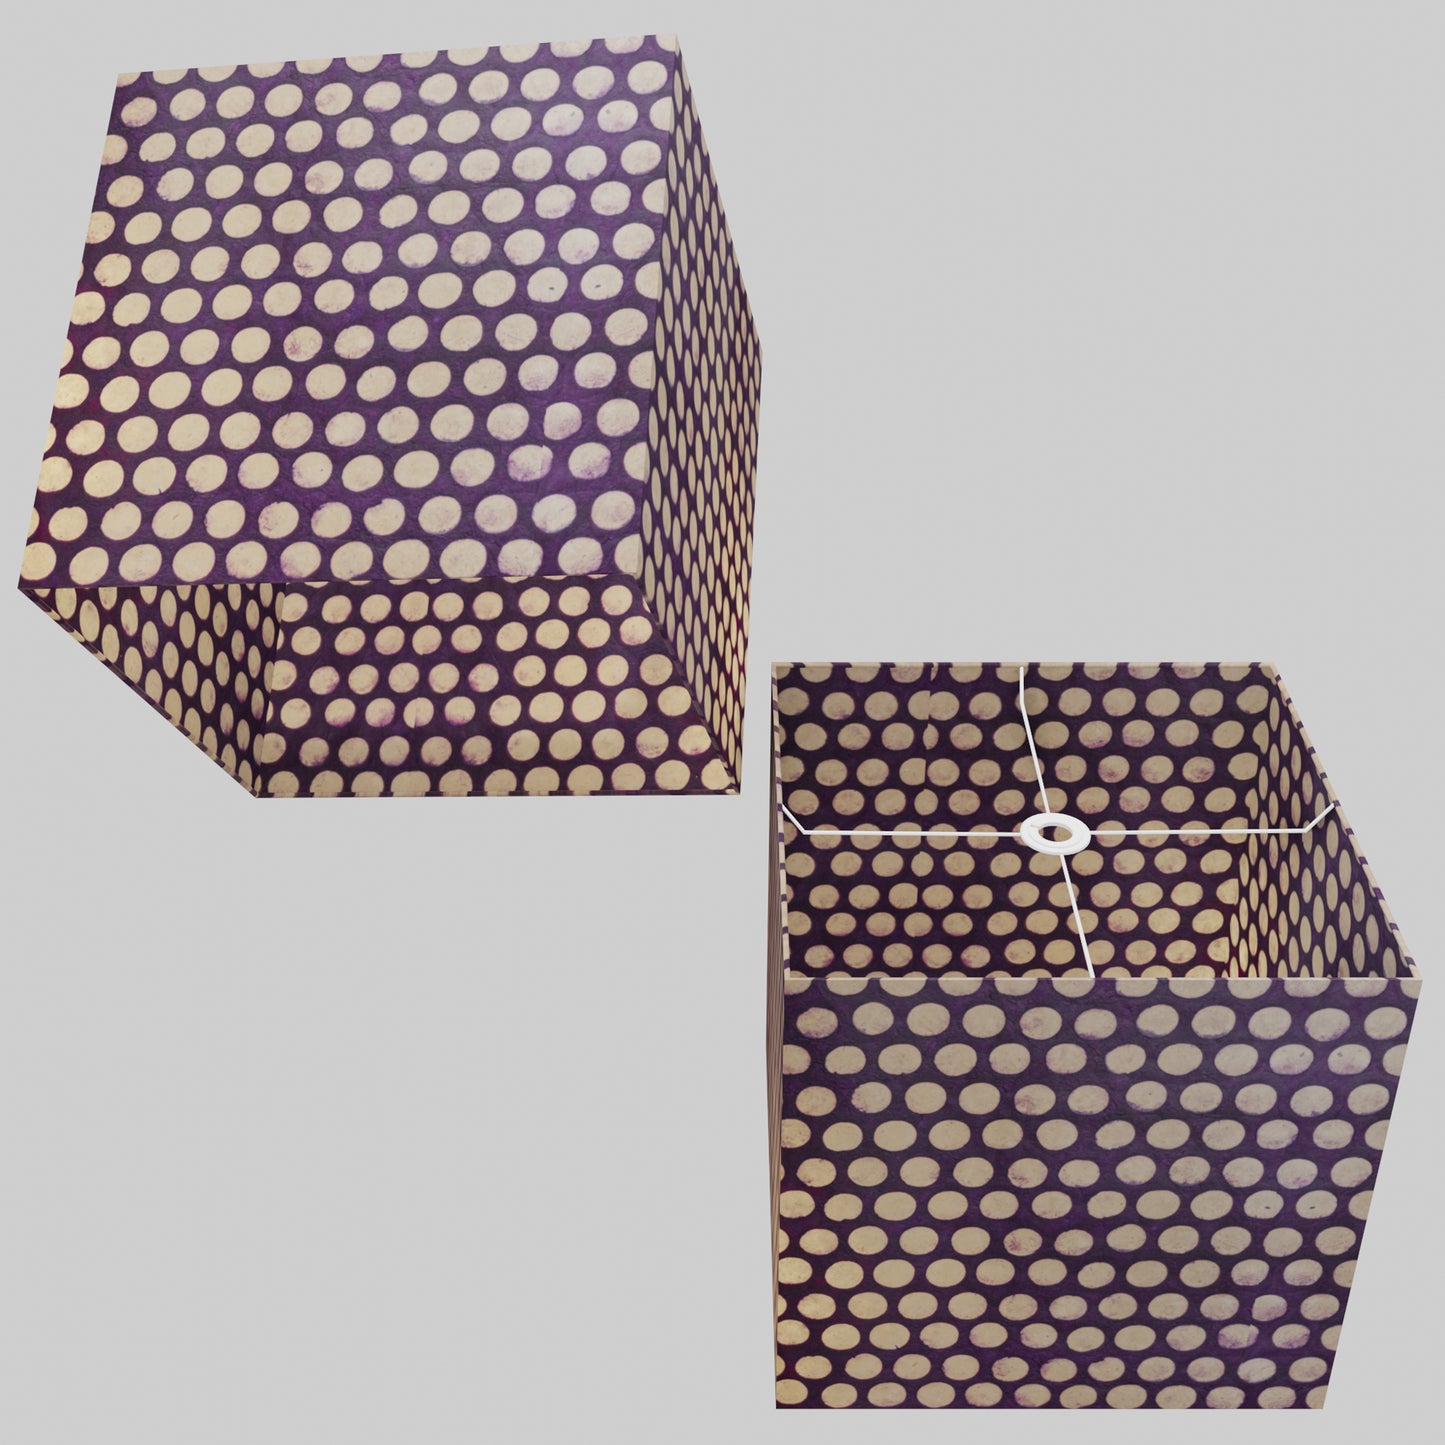 Square Lamp Shade - P79 - Batik Dots Purple, 40cm(w) x 40cm(h) x 40cm(d)